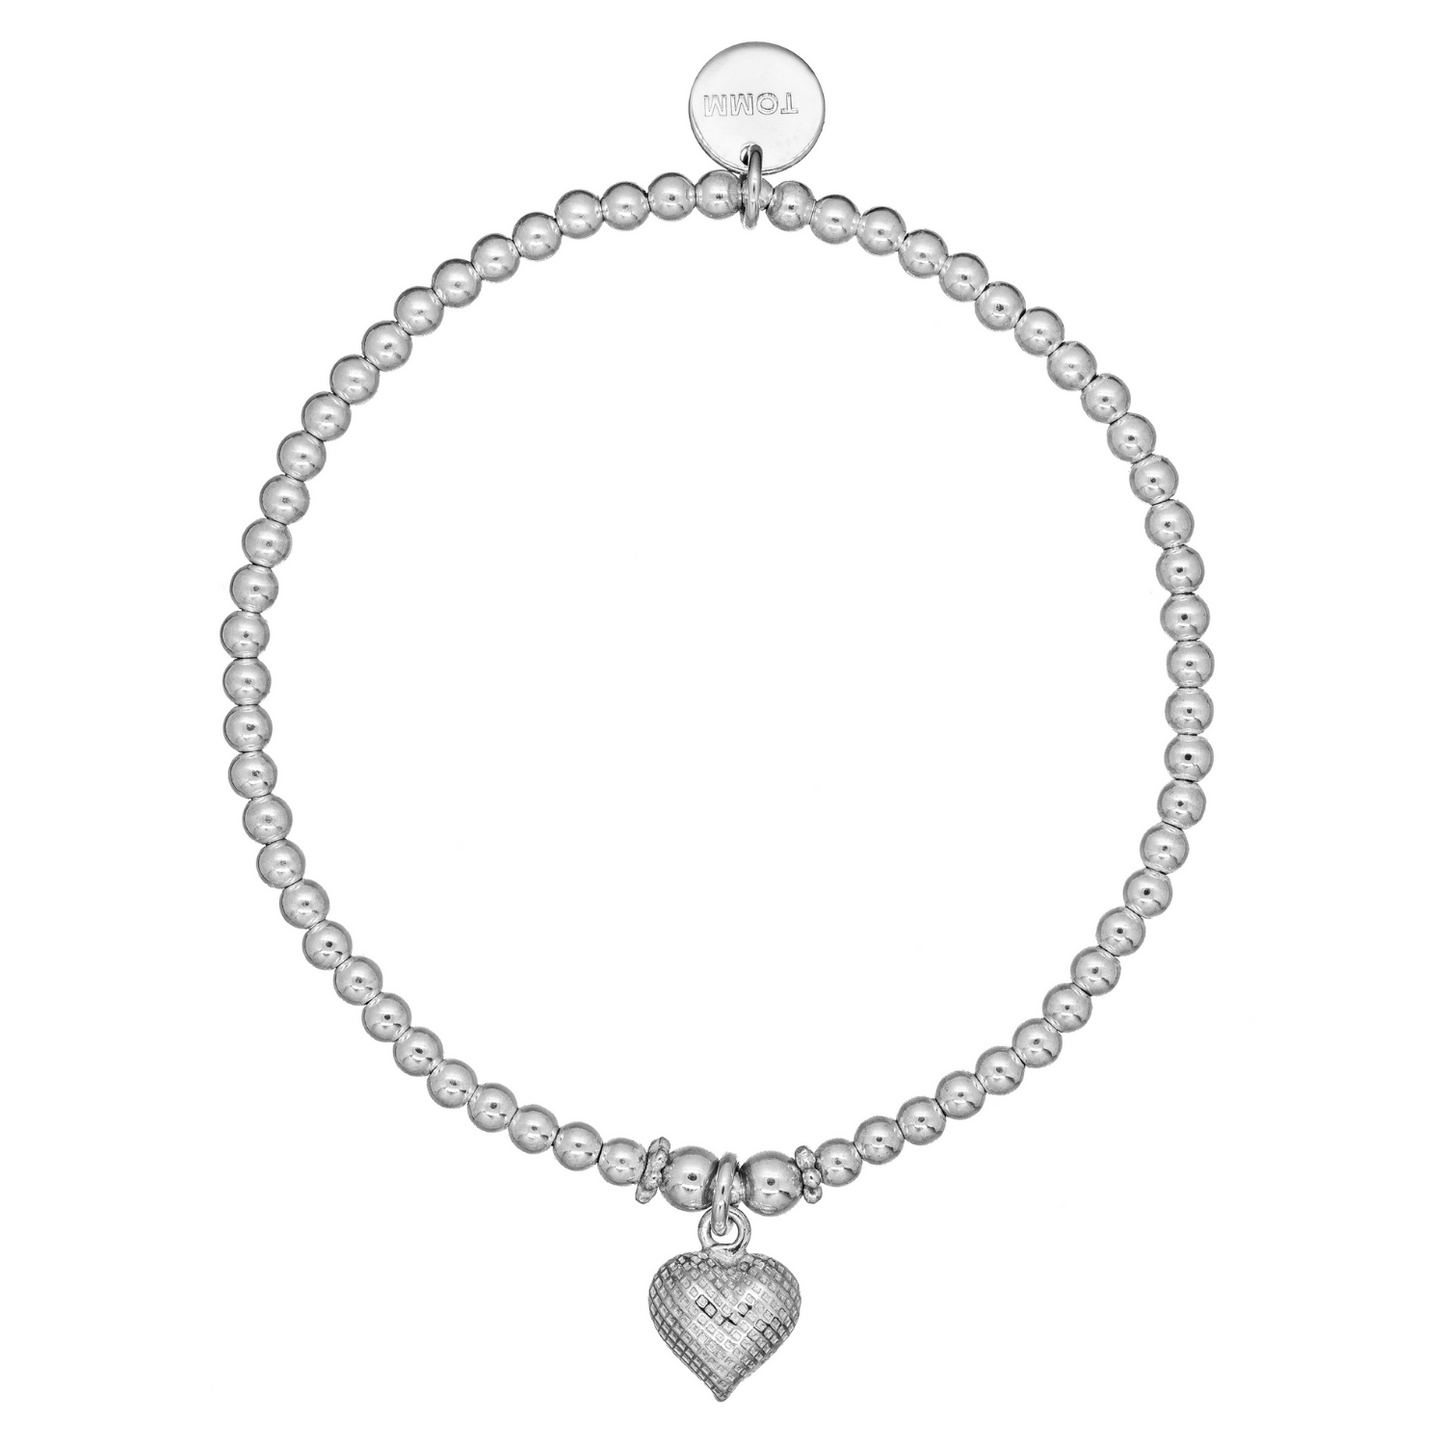 Dainty-heart-charm-bracelet-sterling-silver